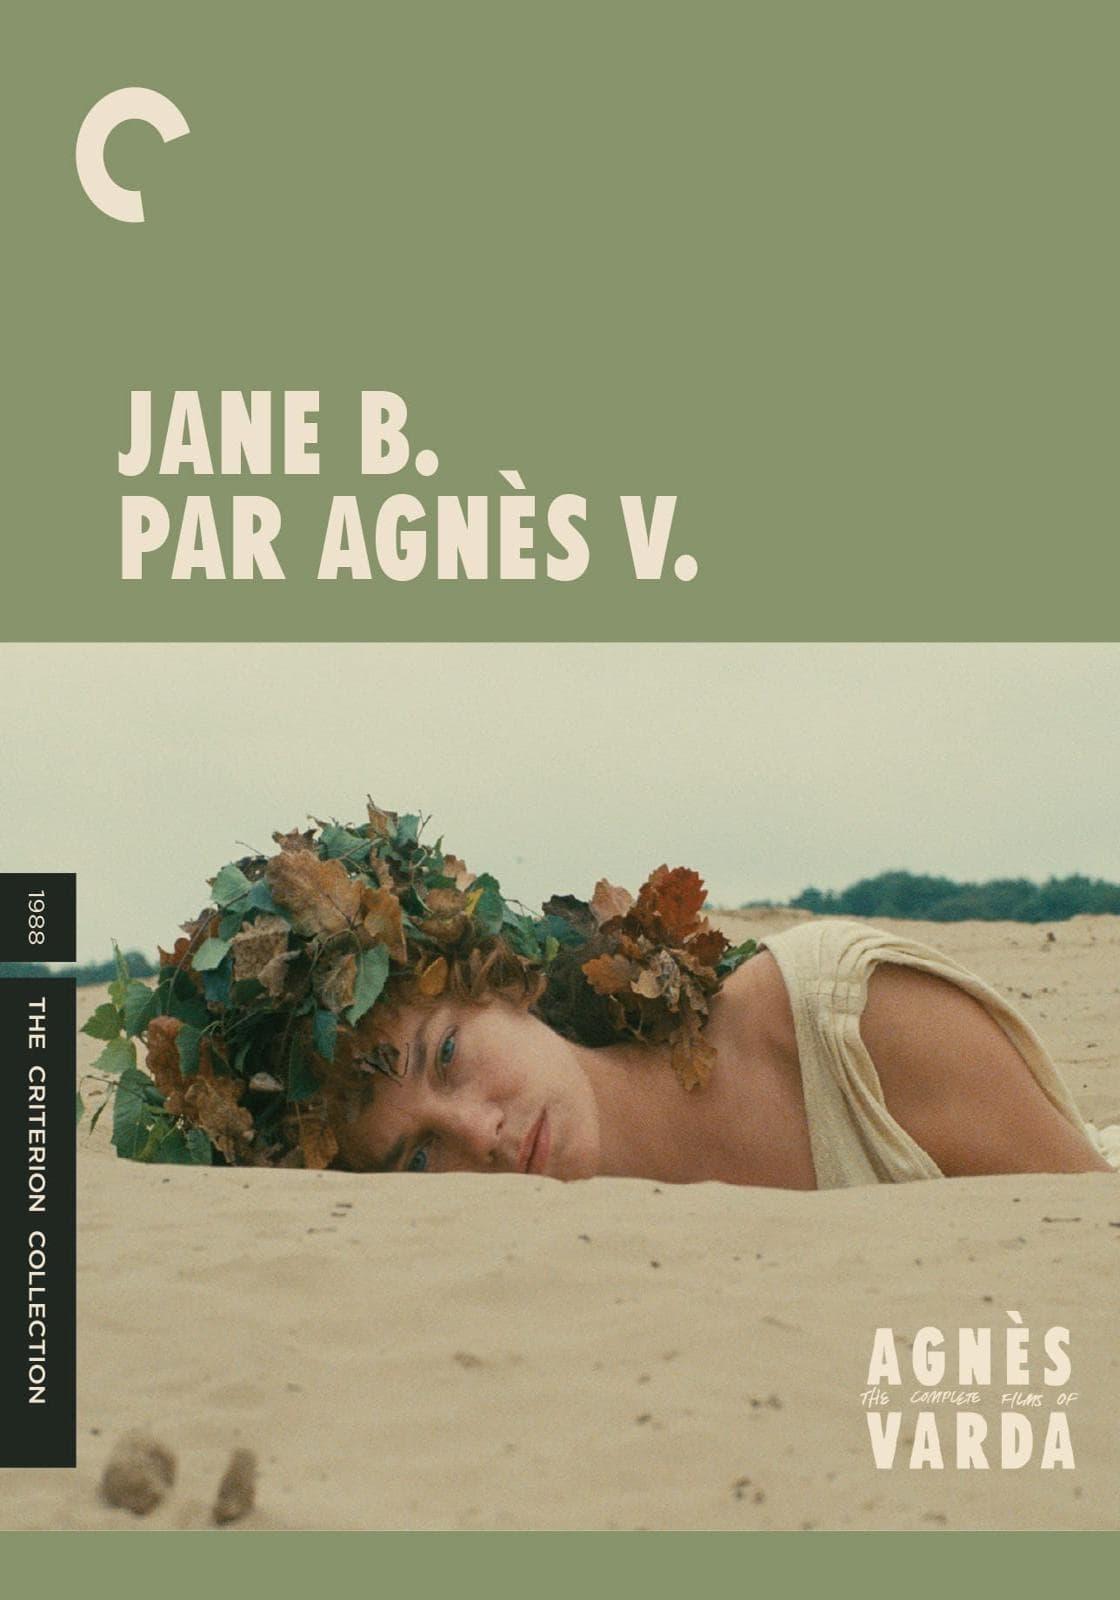 Jane B. for Agnès V. poster